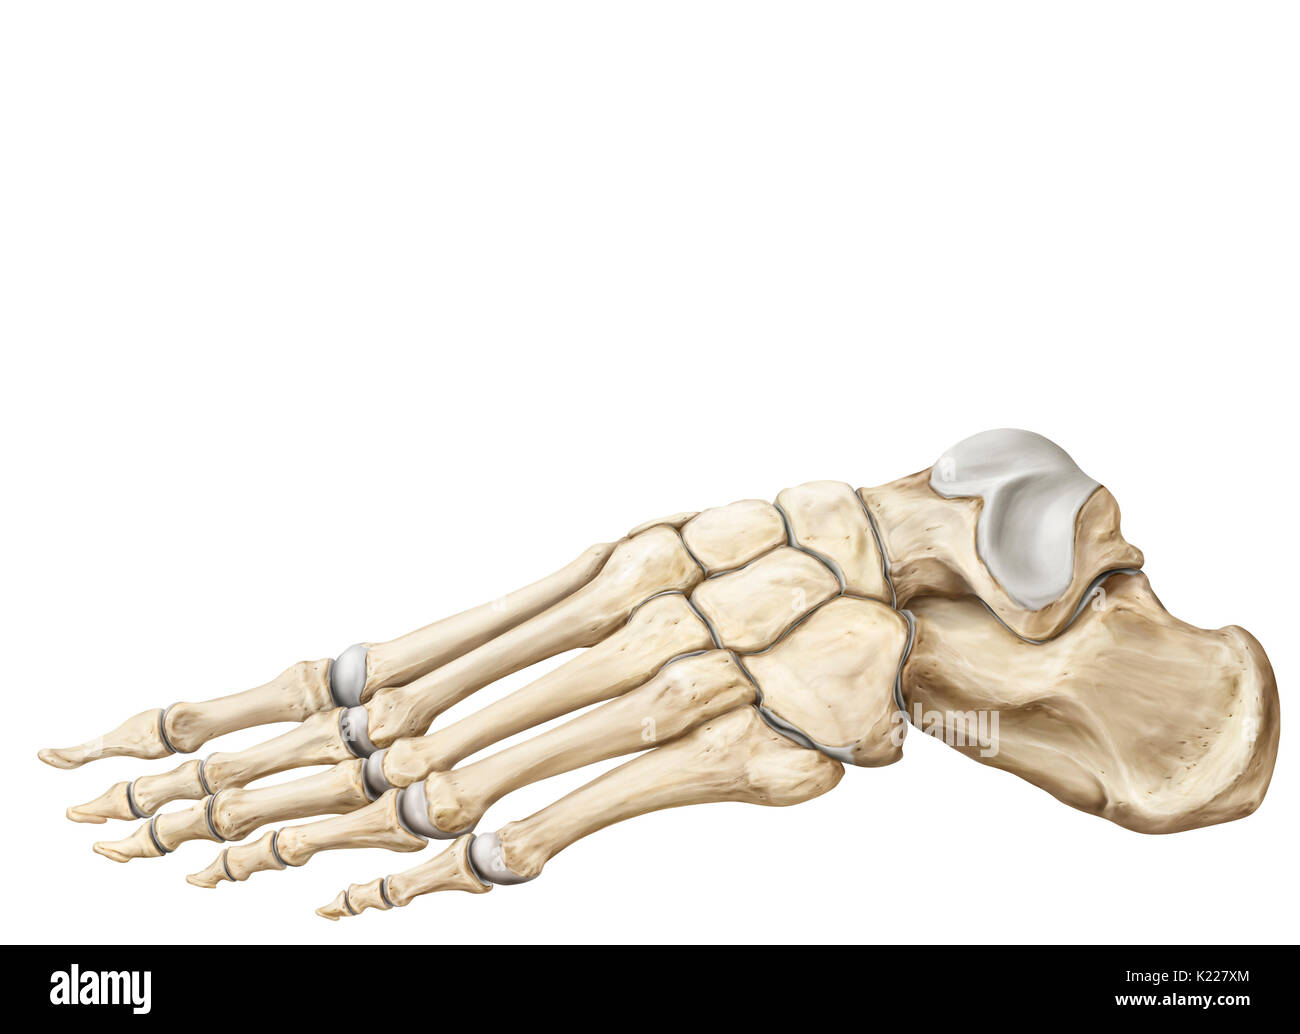 La parte terminale del lembo inferiore di appoggio al terreno durante la posizione eretta; lo scheletro del piede ha 26 ossa. Foto Stock